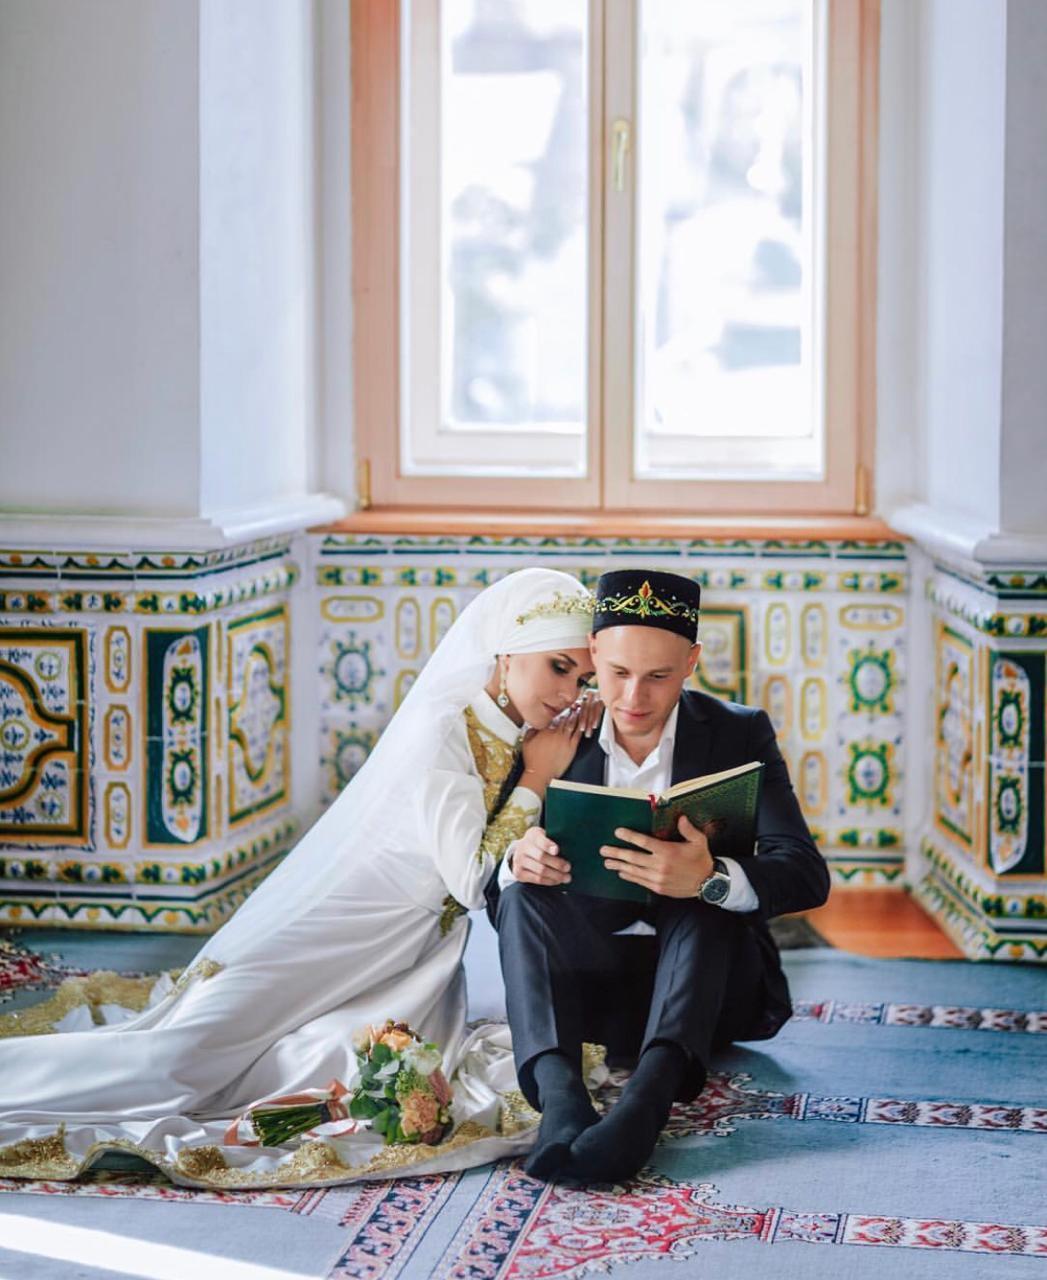 После никях. Никях Нефтеюганск мечеть. Имам Никях. Мусульманская свадьба в мечети. Татарская свадьба в мечети.